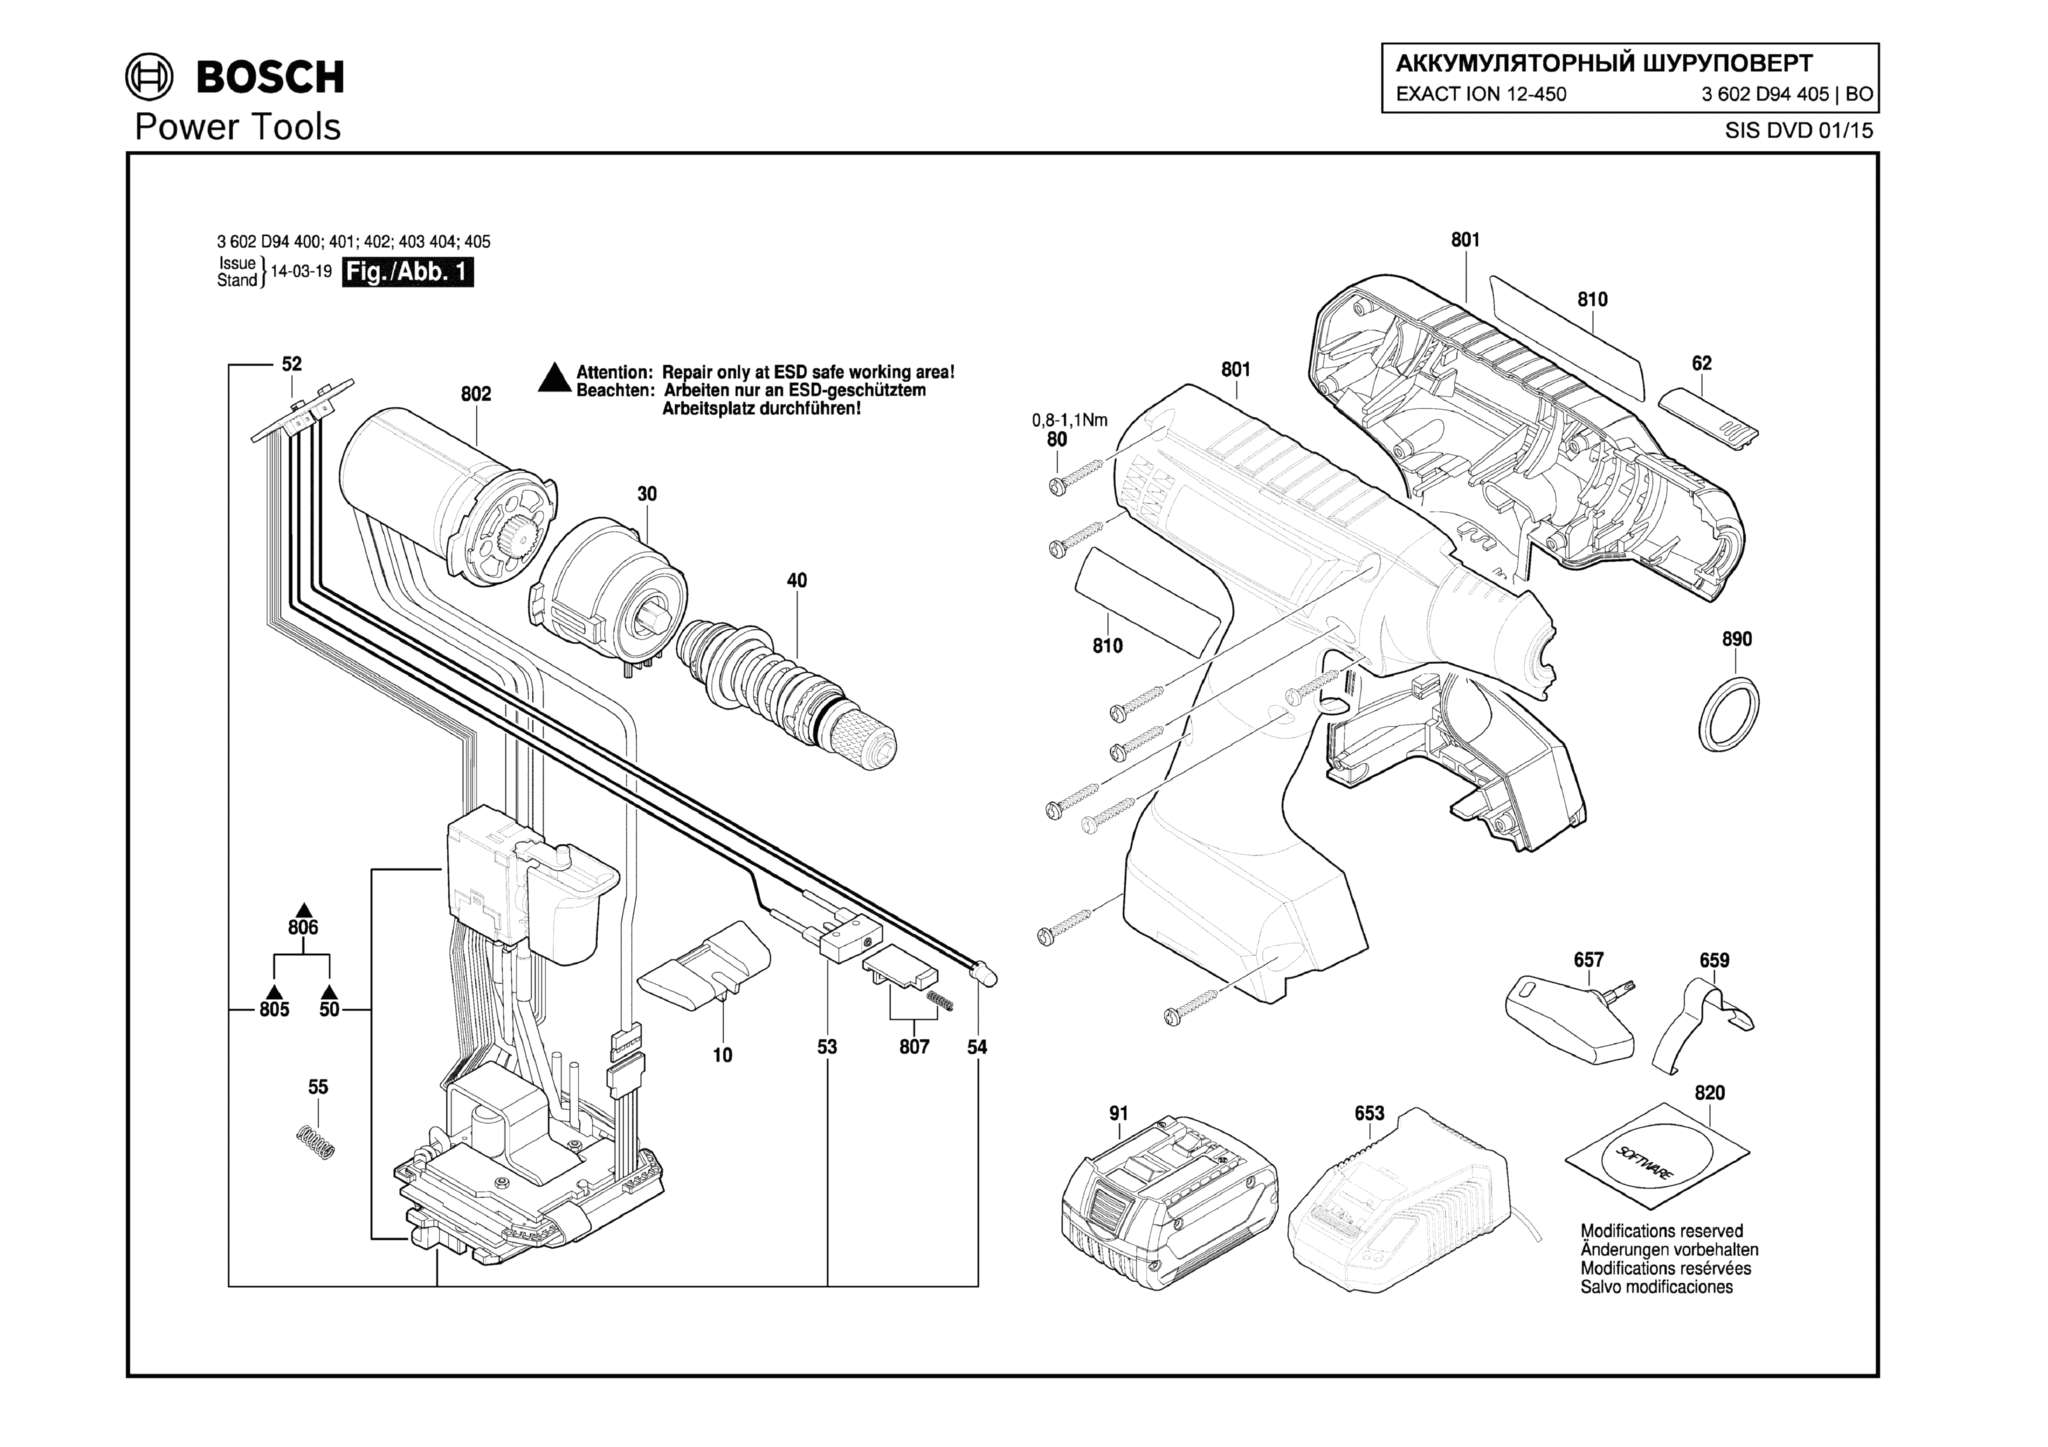 Запчасти, схема и деталировка Bosch EXACT ION 12-450 (ТИП 3602D94405)